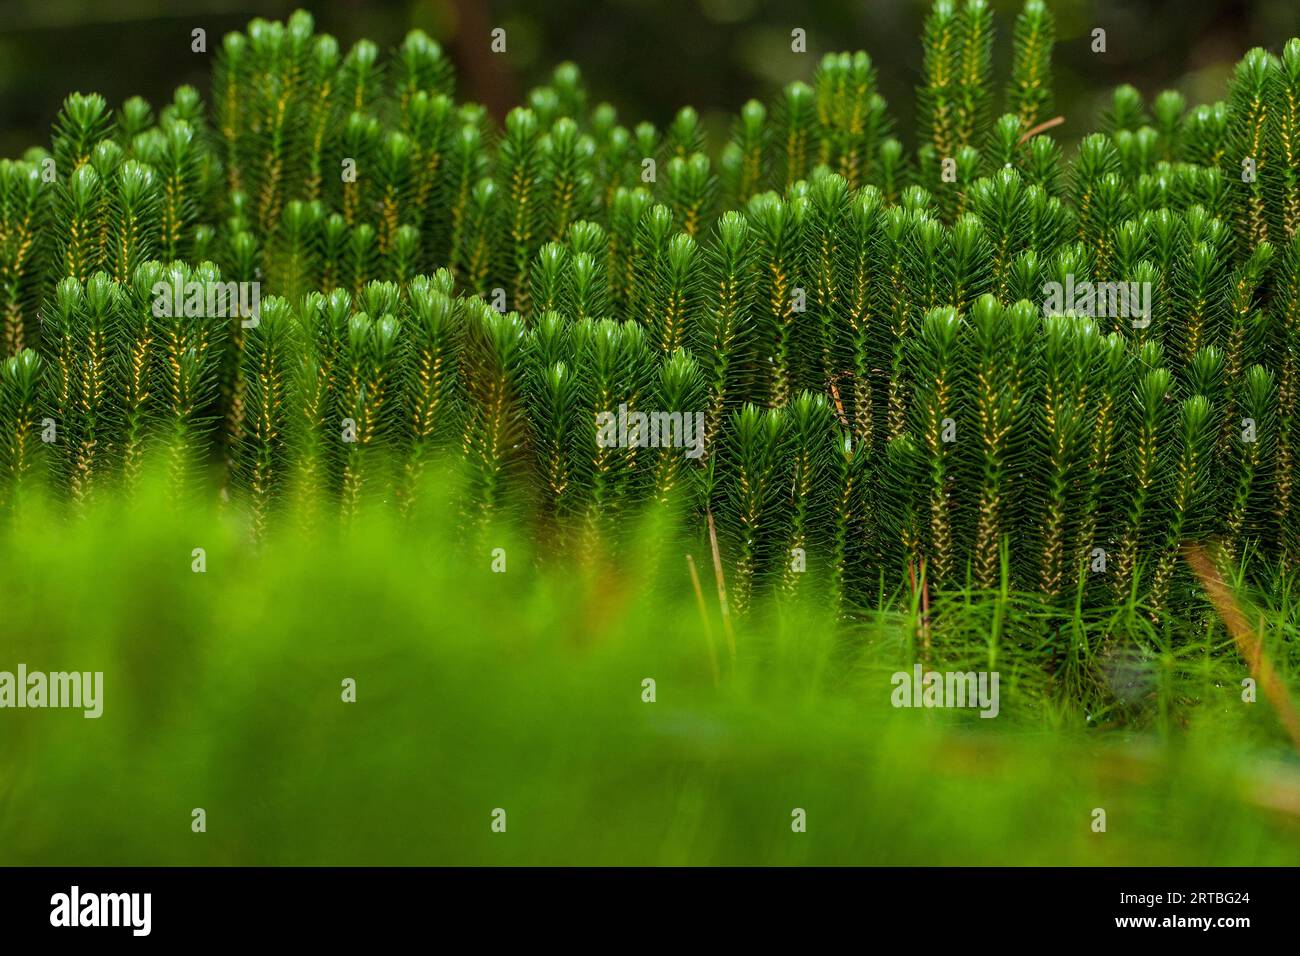 fir clubmoss, mountain clubmoss, fir-clubmoss (Huperzia selago, Lycopodium selago), group with sporangia, Netherlands, Drenthe Stock Photo